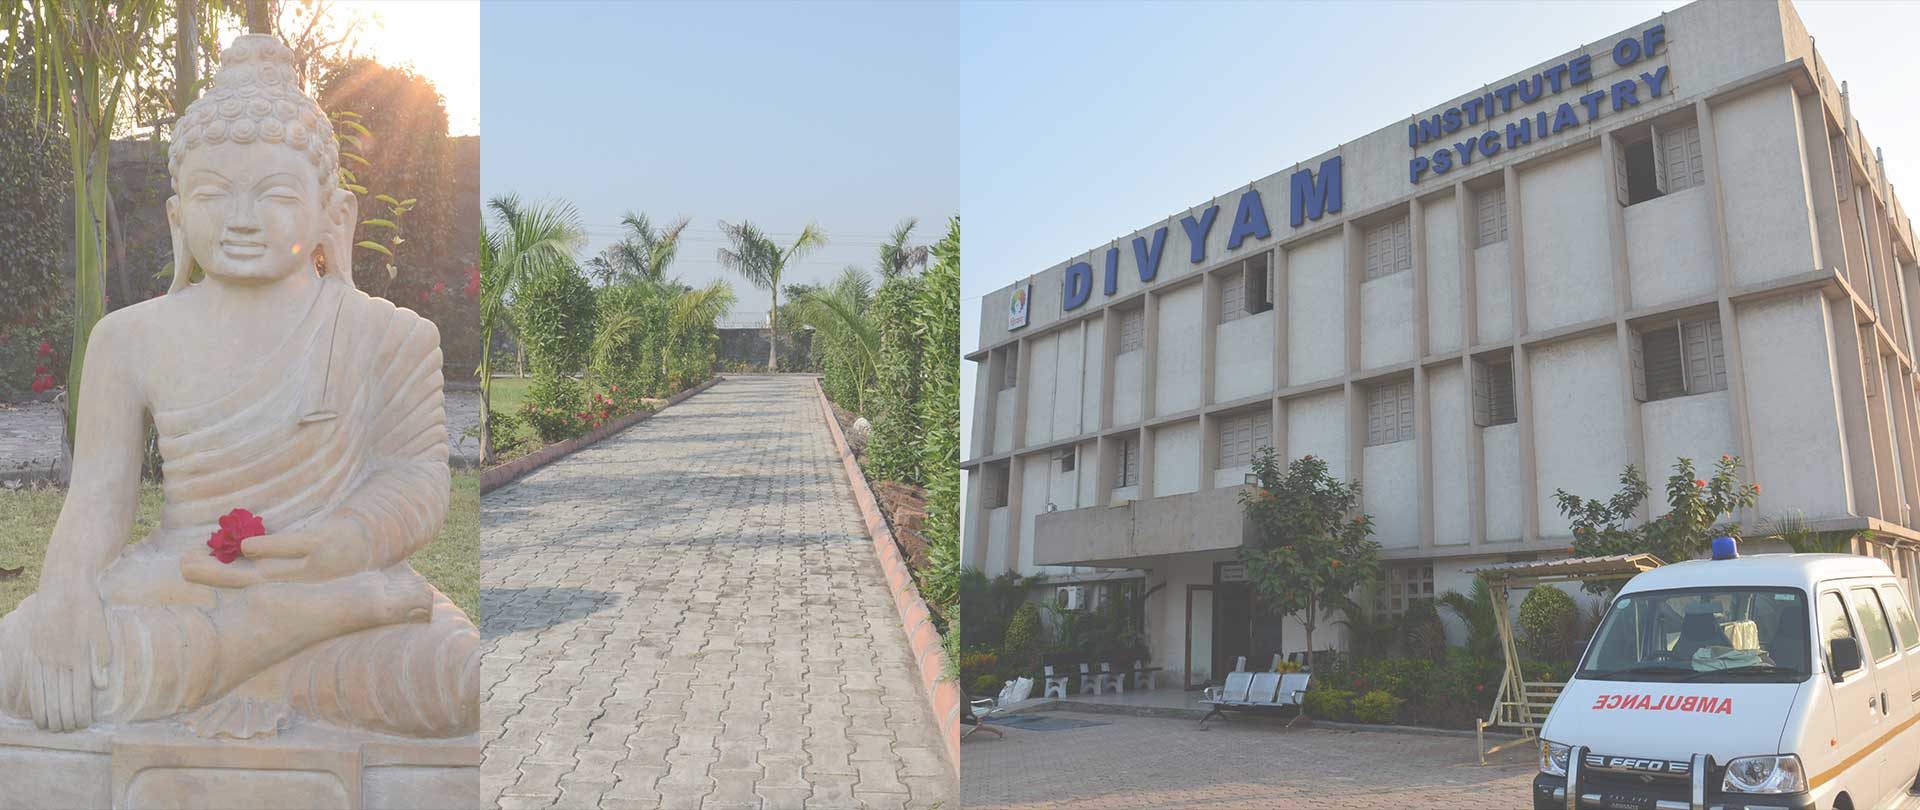 Divyam Hospital - Institute of Psychiatry